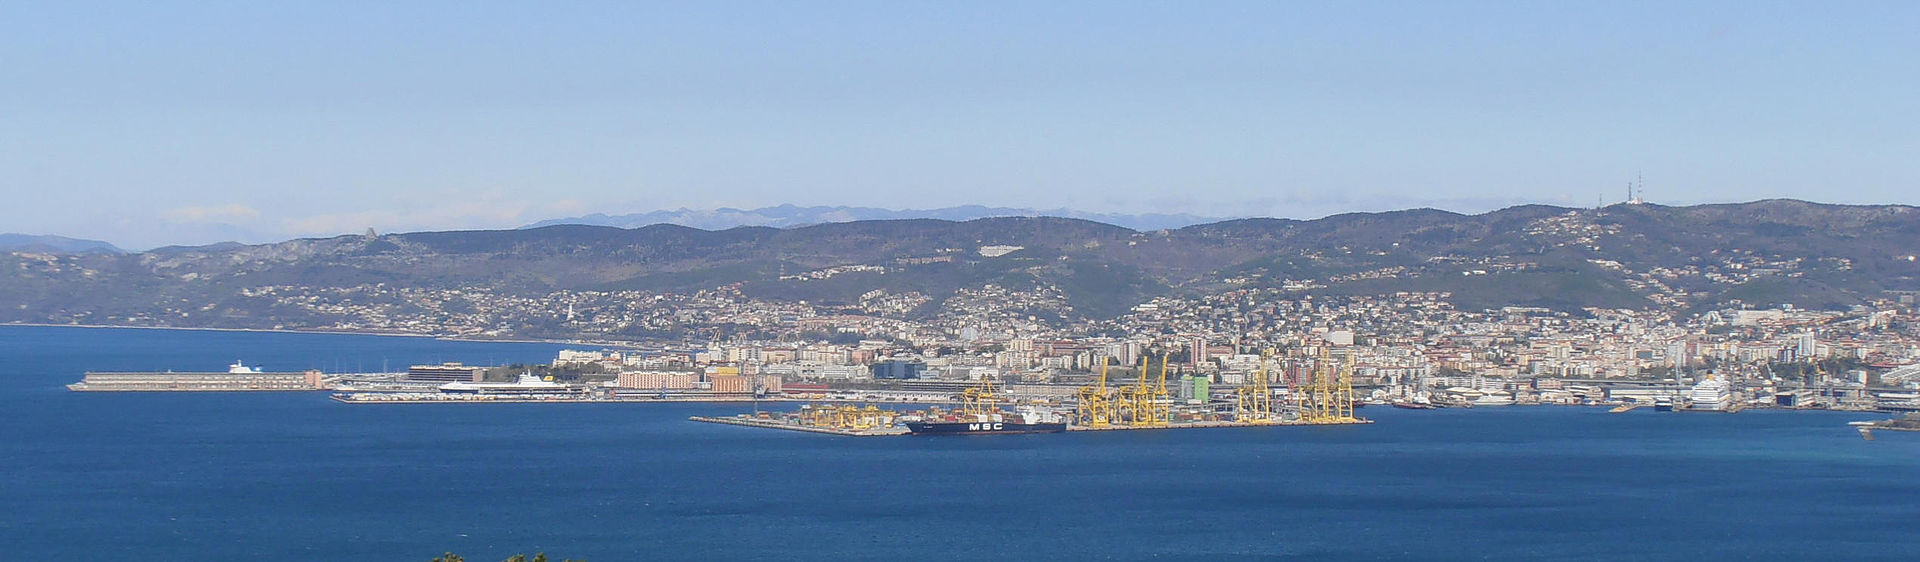 Il porto di Trieste, settore sud.